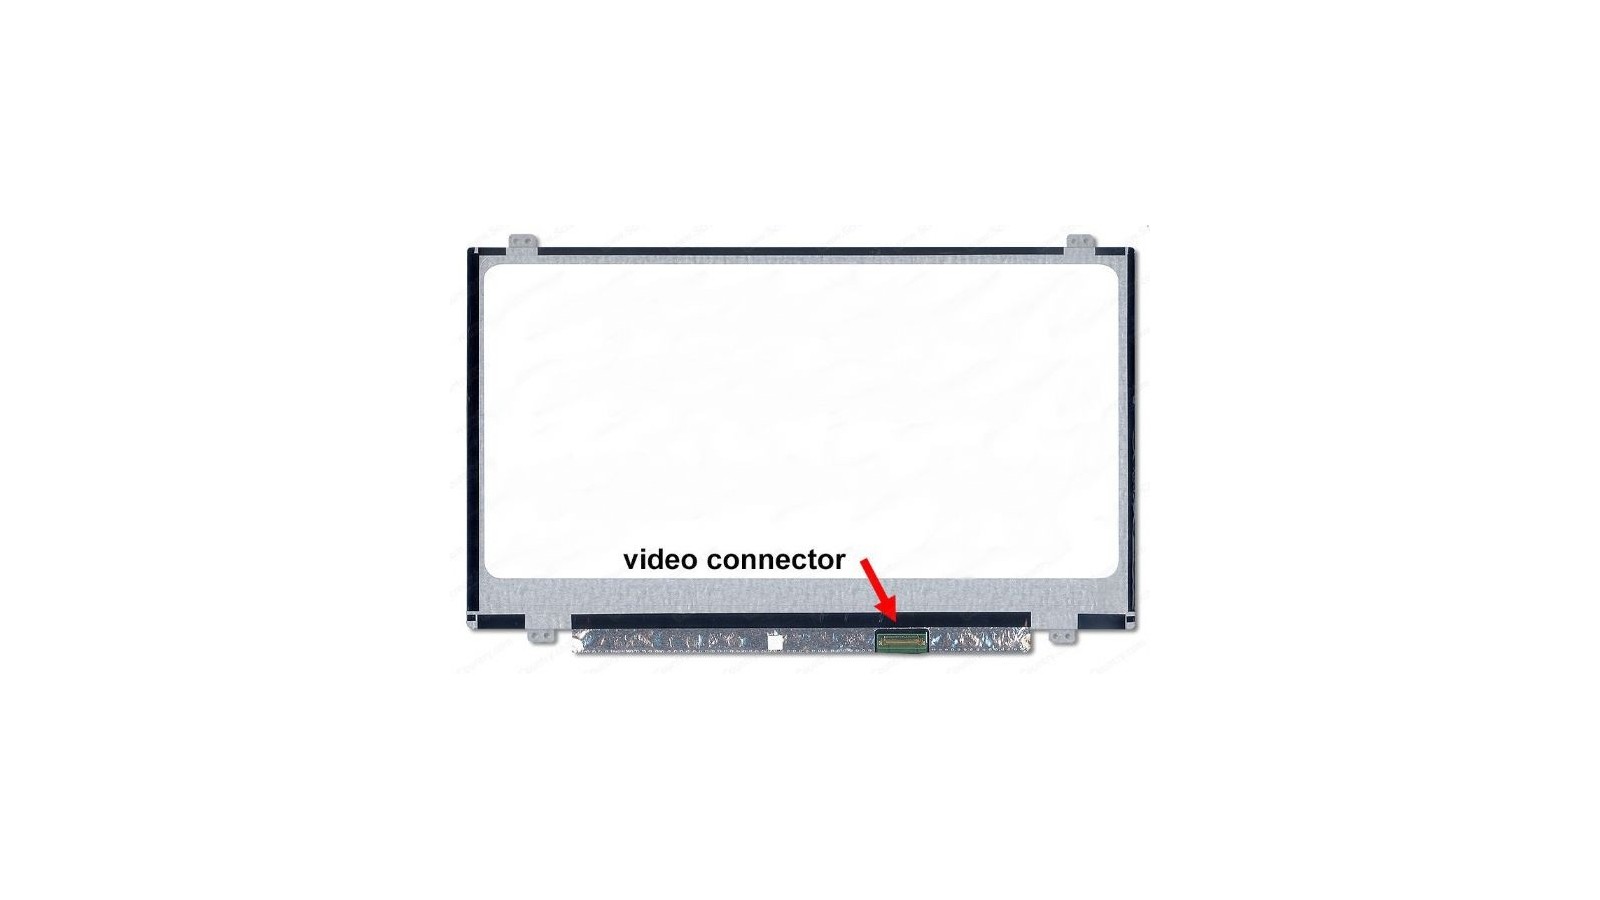 Display LCD Schermo 14.0 LED compatibile con HB140WX1-301